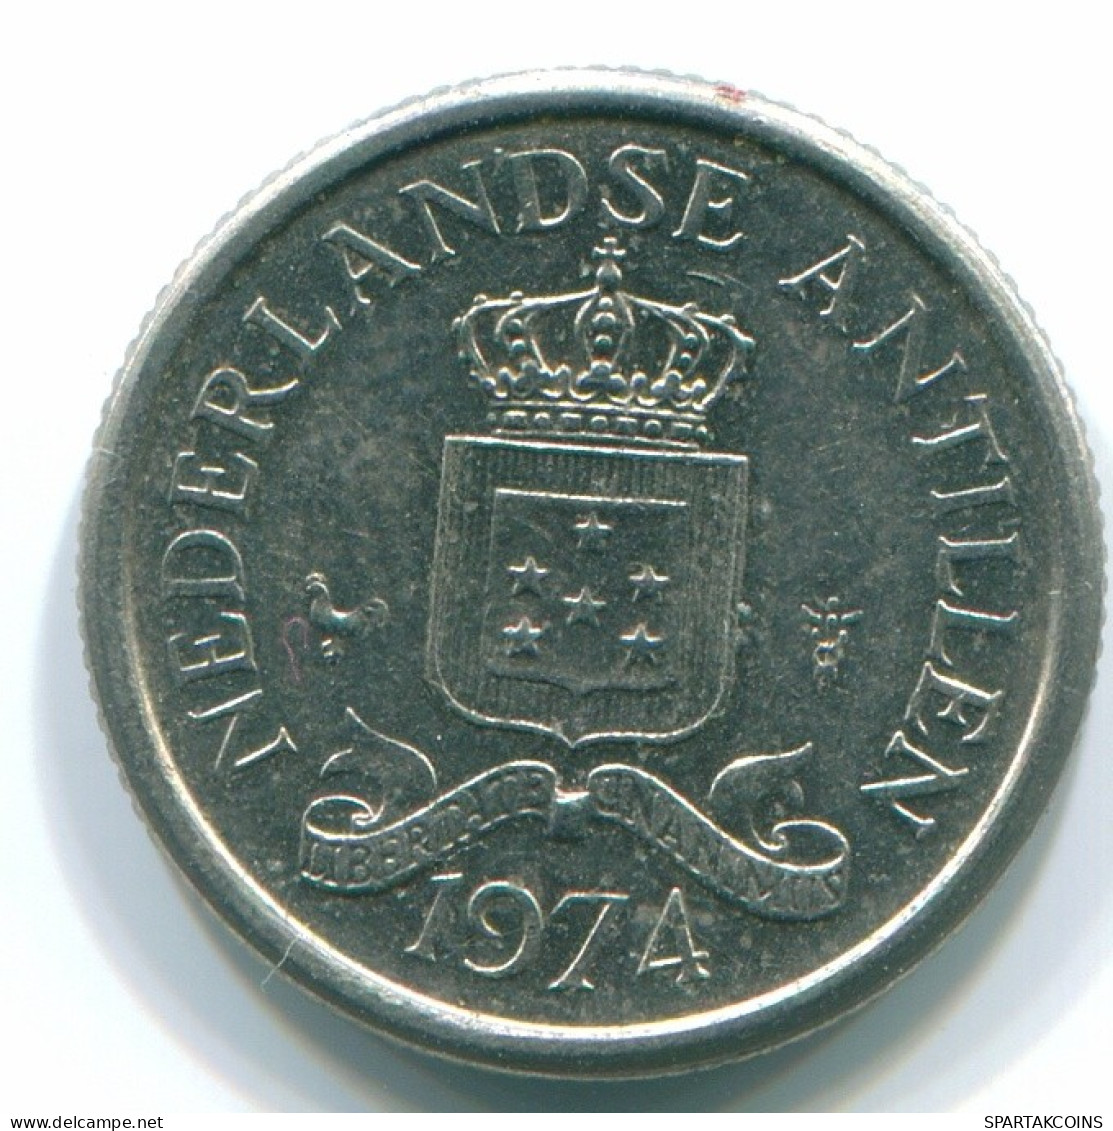 10 CENTS 1974 NETHERLANDS ANTILLES Nickel Colonial Coin #S13520.U.A - Niederländische Antillen